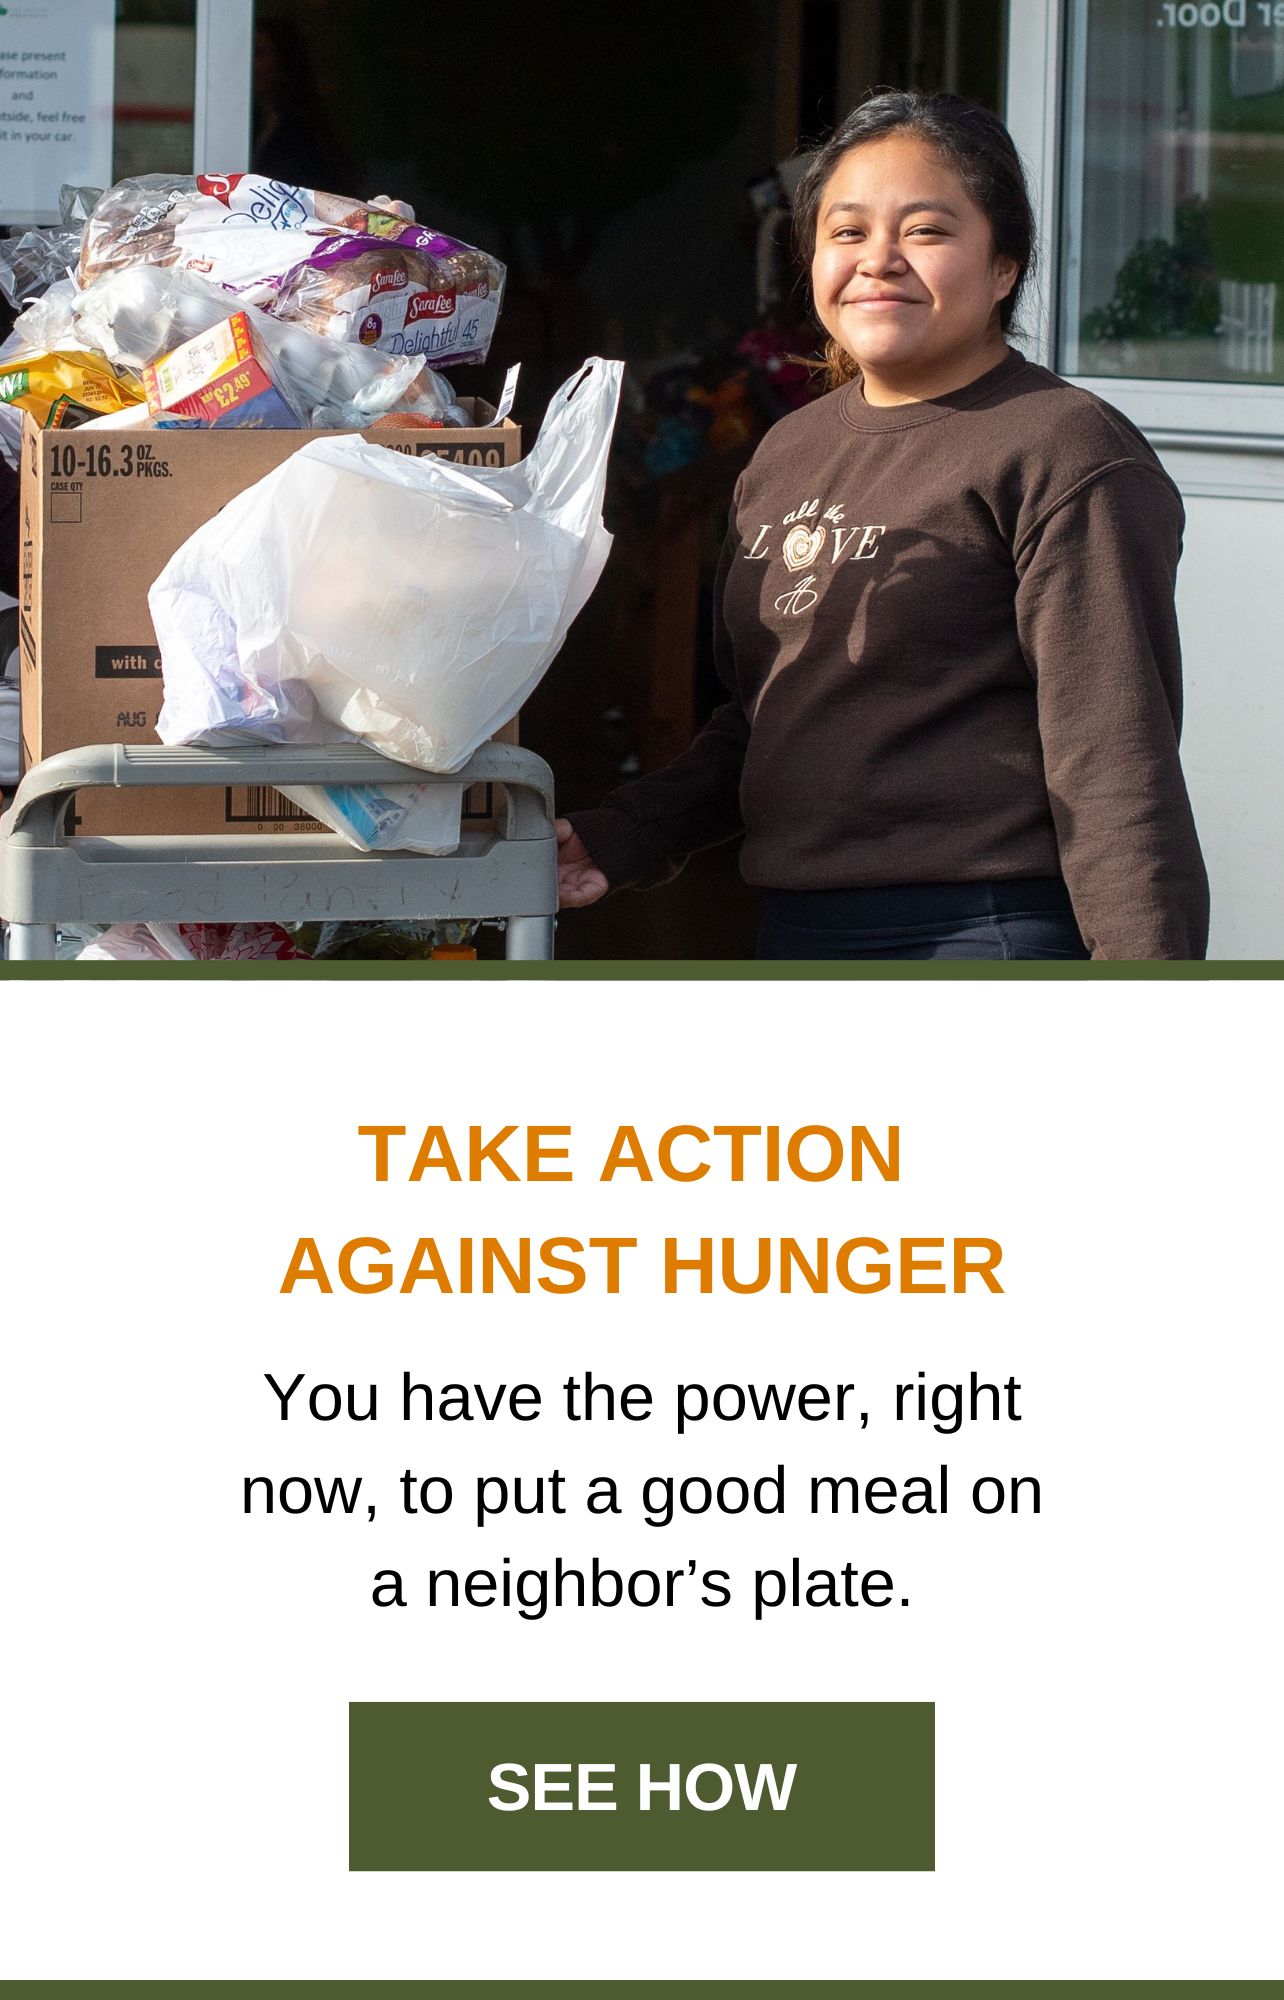 Tome medidas contra a fome. Você tem o poder, agora mesmo, de colocar uma refeição no prato de um vizinho. Veja como.